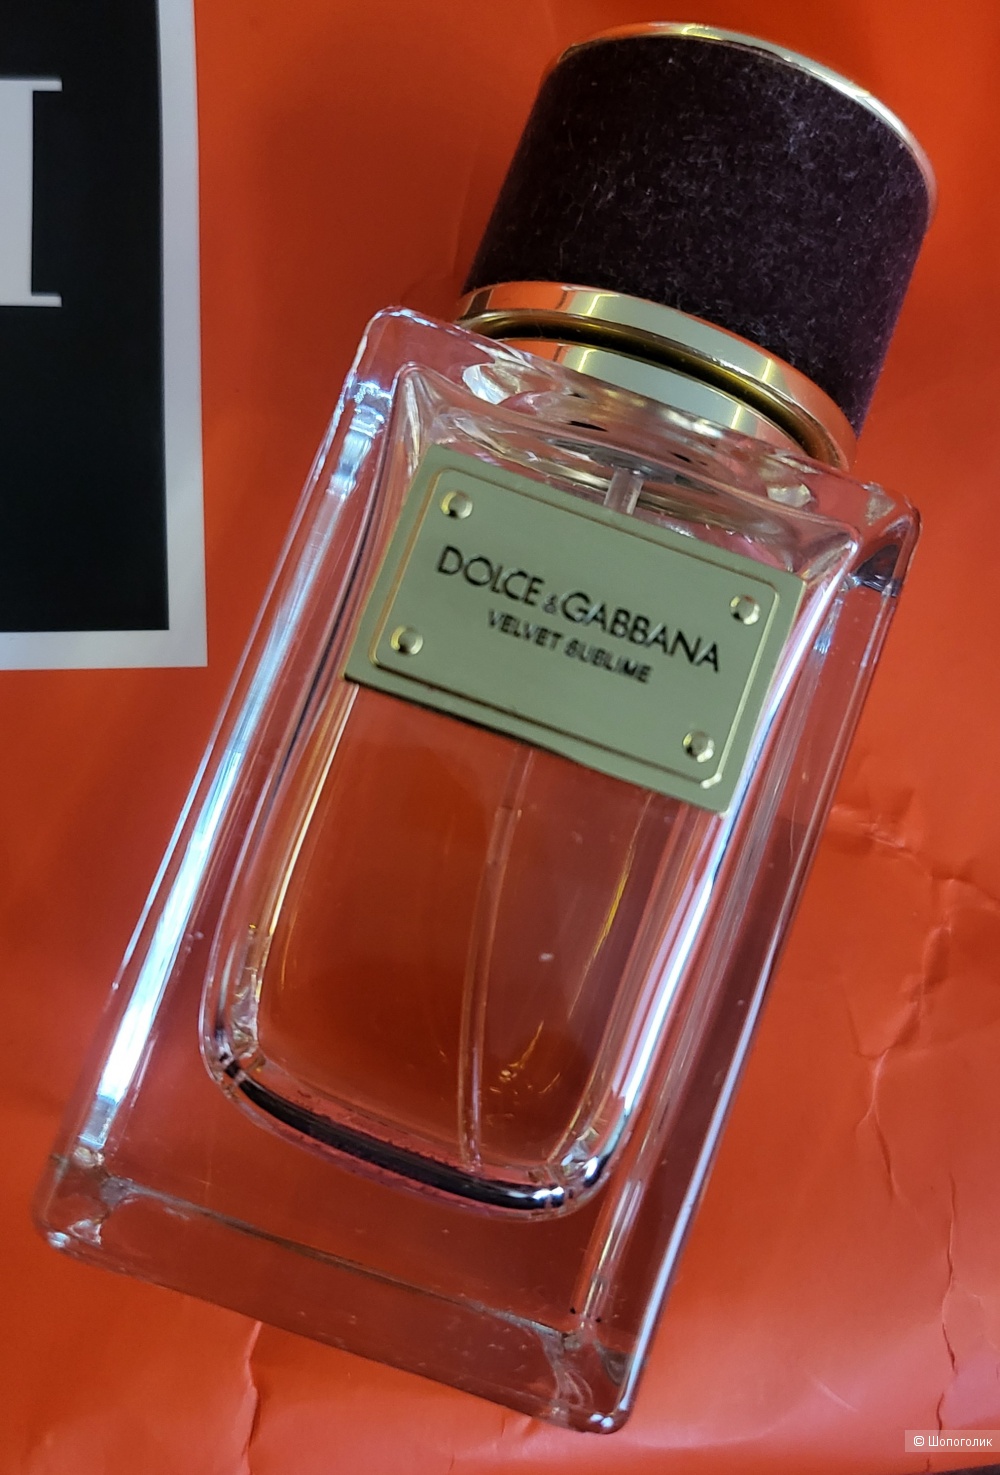 Парфюм Velvet Sublime Dolce&Gabbana, 25 ml